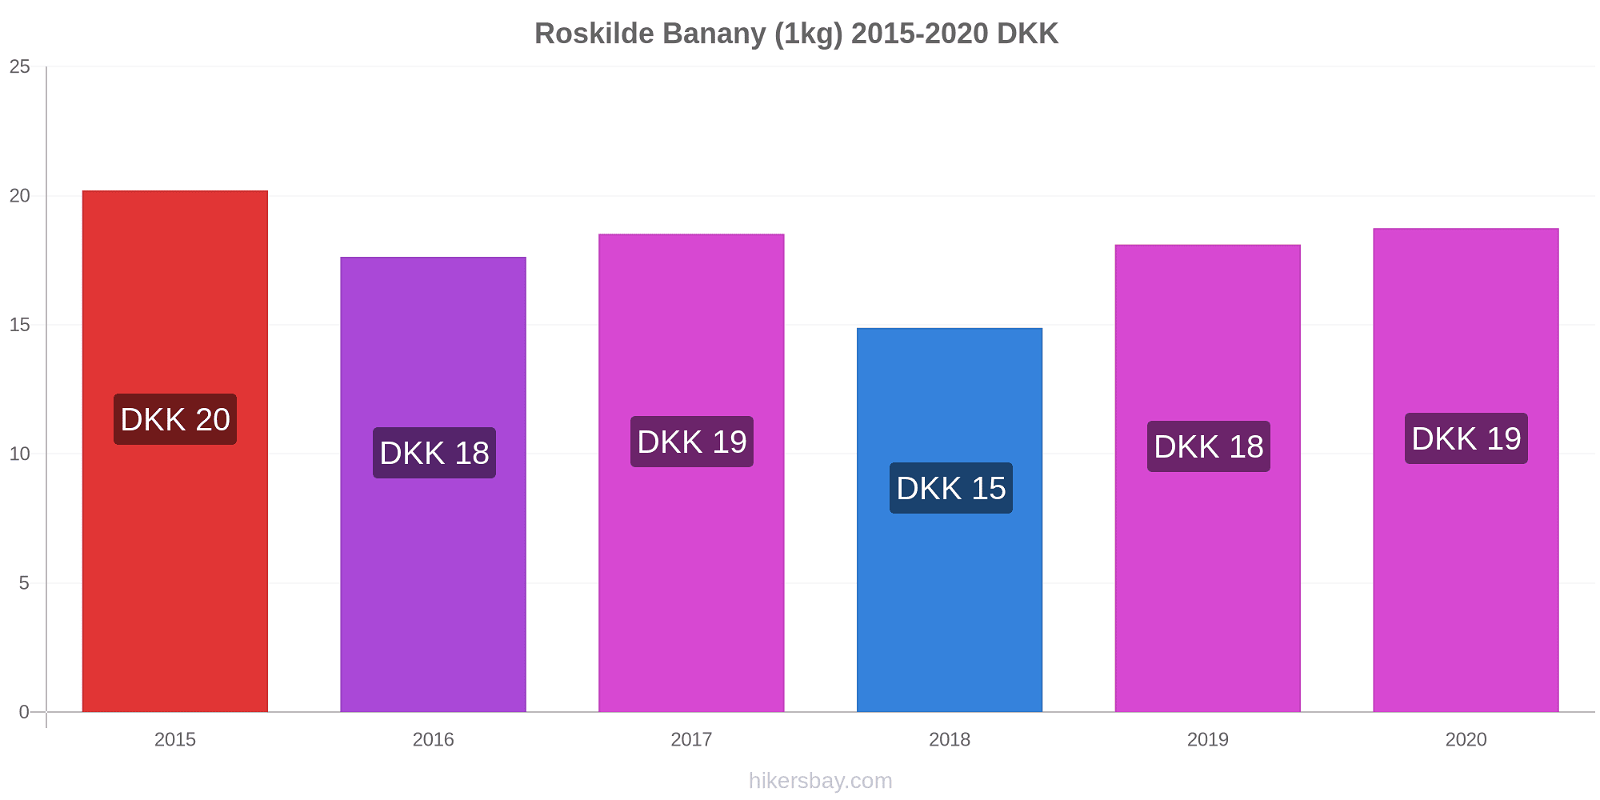 Roskilde zmiany cen Banany (1kg) hikersbay.com